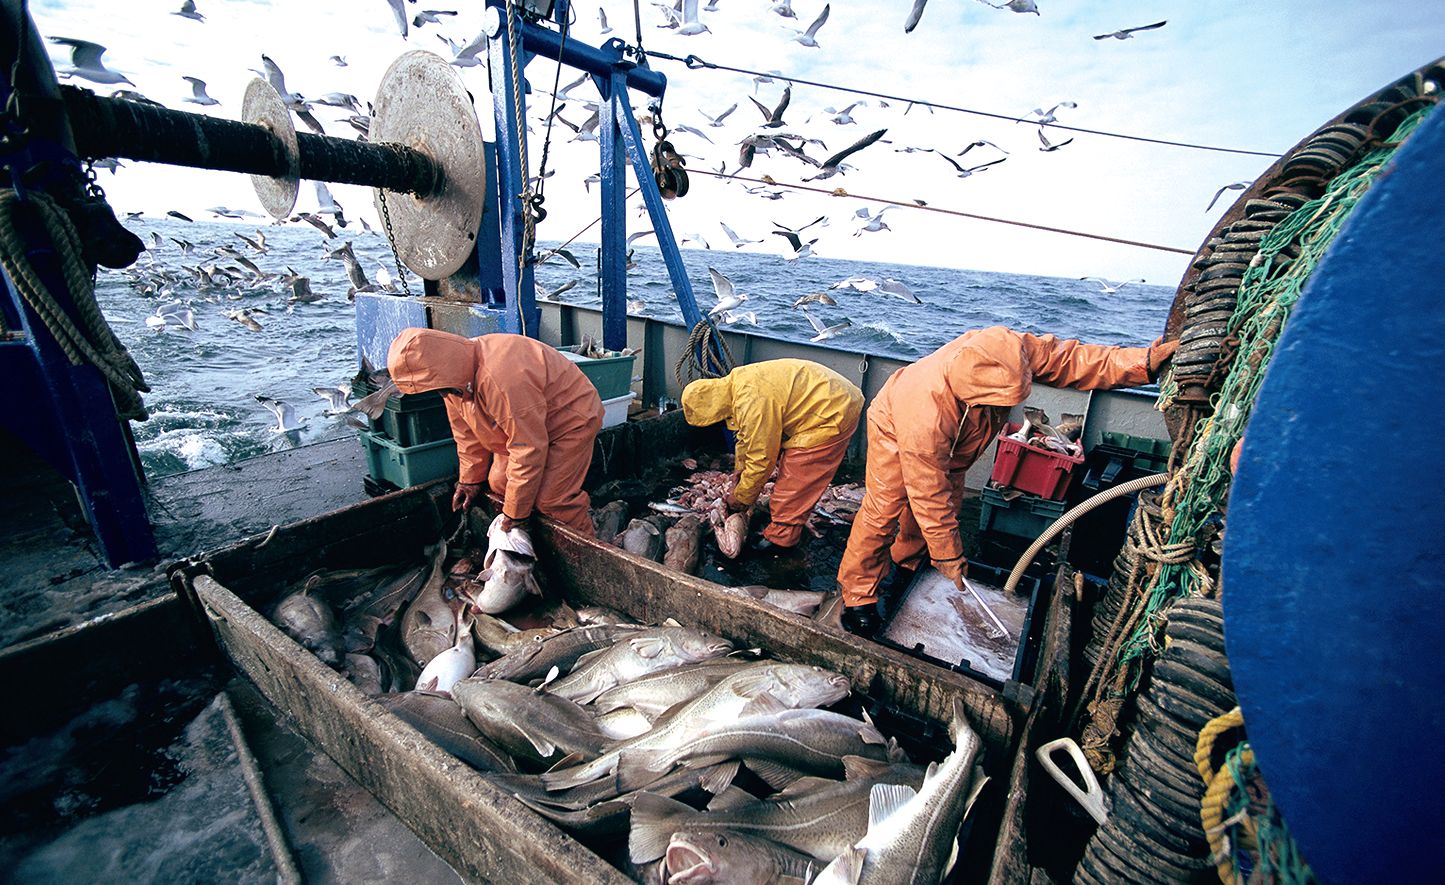 Илья Шестаков: «В ближайшие годы рыбохозяйственный комплекс России сможет повысить экономические показатели»